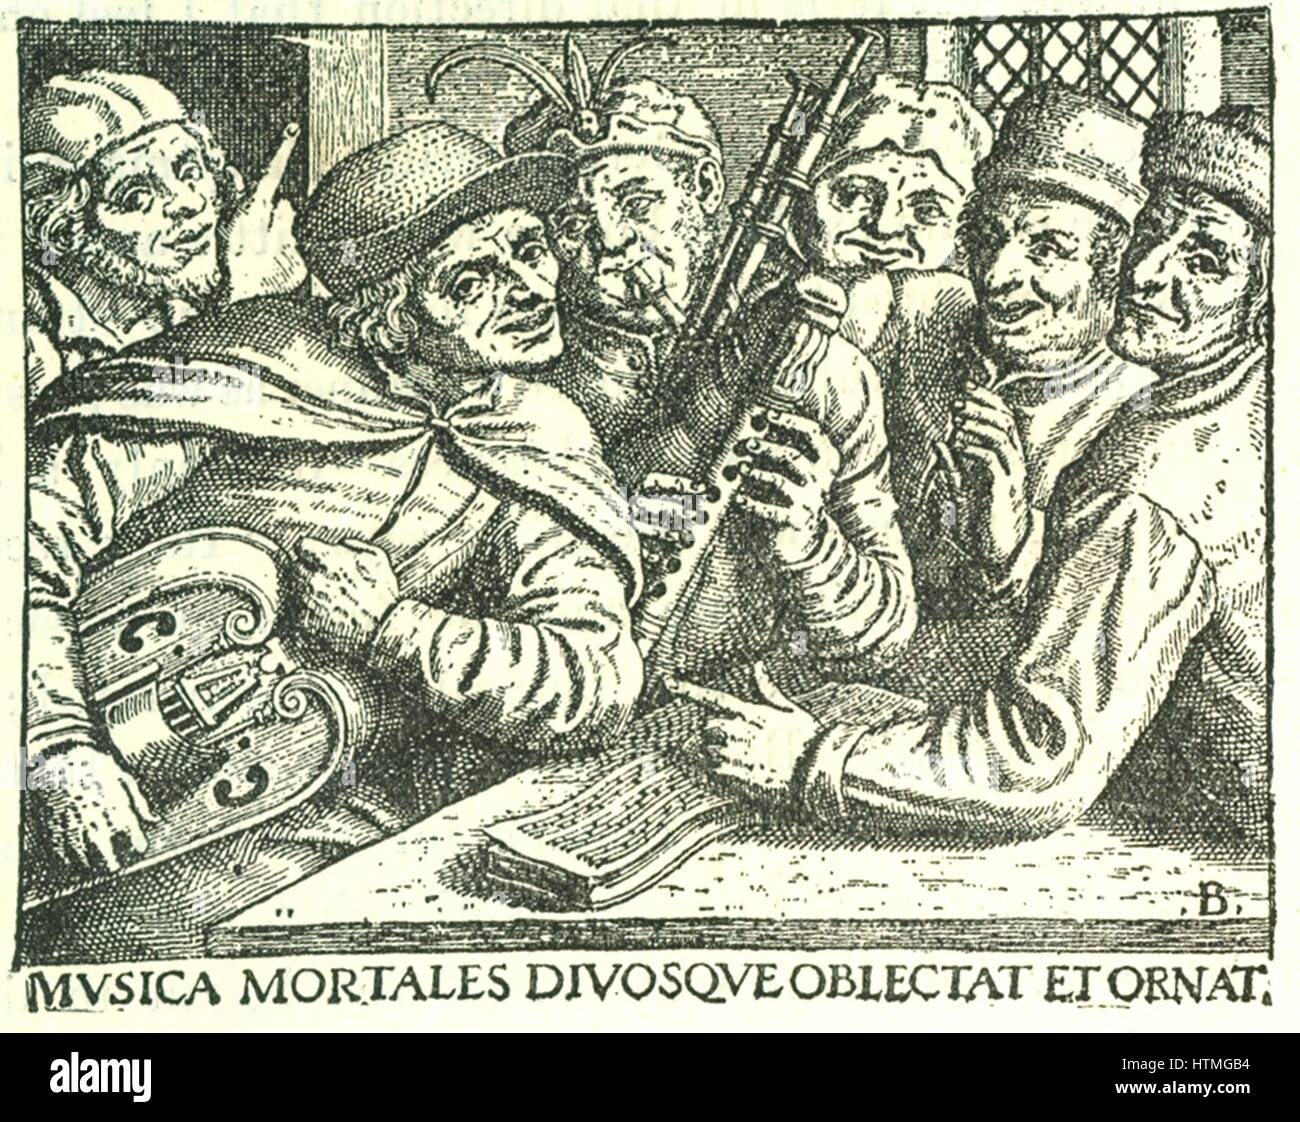 Gruppe von deutschen Musikern, Mitte des 16. Jahrhunderts. Mann auf linken Seite hält eine Drehleier, auch bekannt als die Bauern Leier. Mann im Zentrum spielt Dudelsack. Das Buch der Musik, die sie vom spielen ist auf dem Tisch. Legende lautet "Musik erfreut und schmückt, Göttern und sterblichen". Gravur. Stockfoto